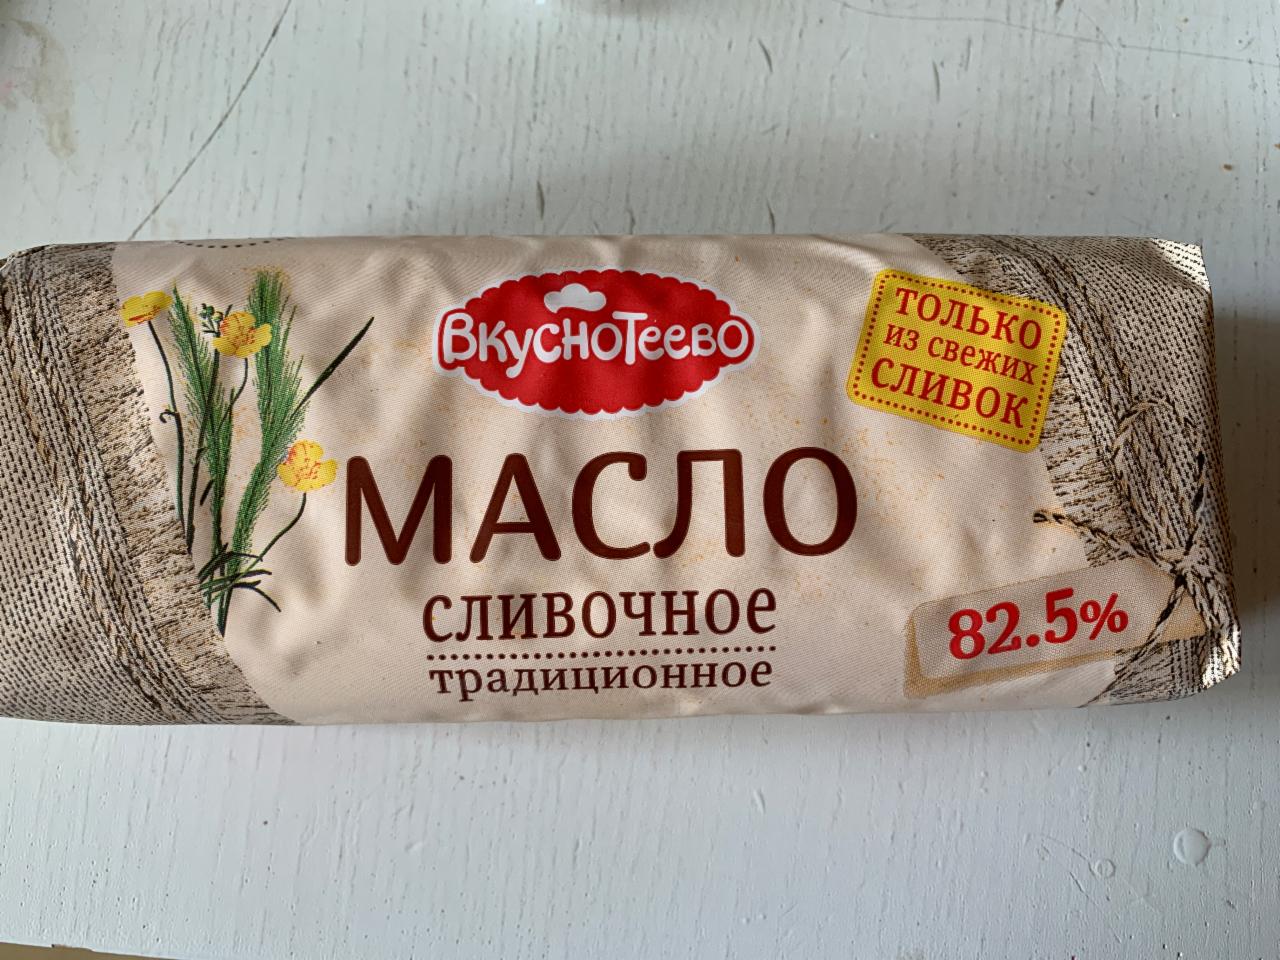 Фото - Масло сливочное традиционное 82.5% Вкуснотеево